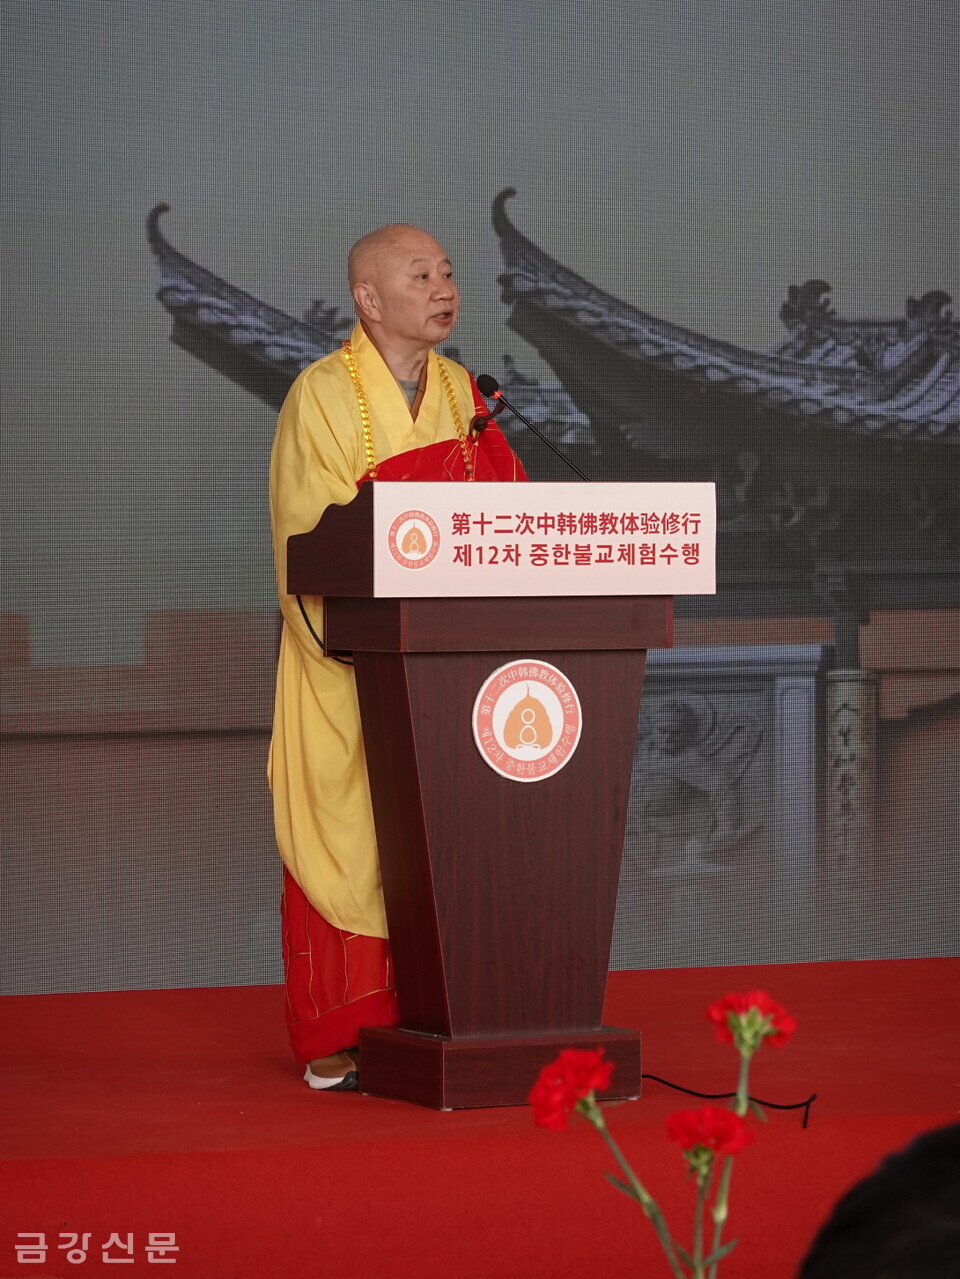 중국불교협회 부회장이자 광동성불교협회장 명생 스님이 축사하고 있다.